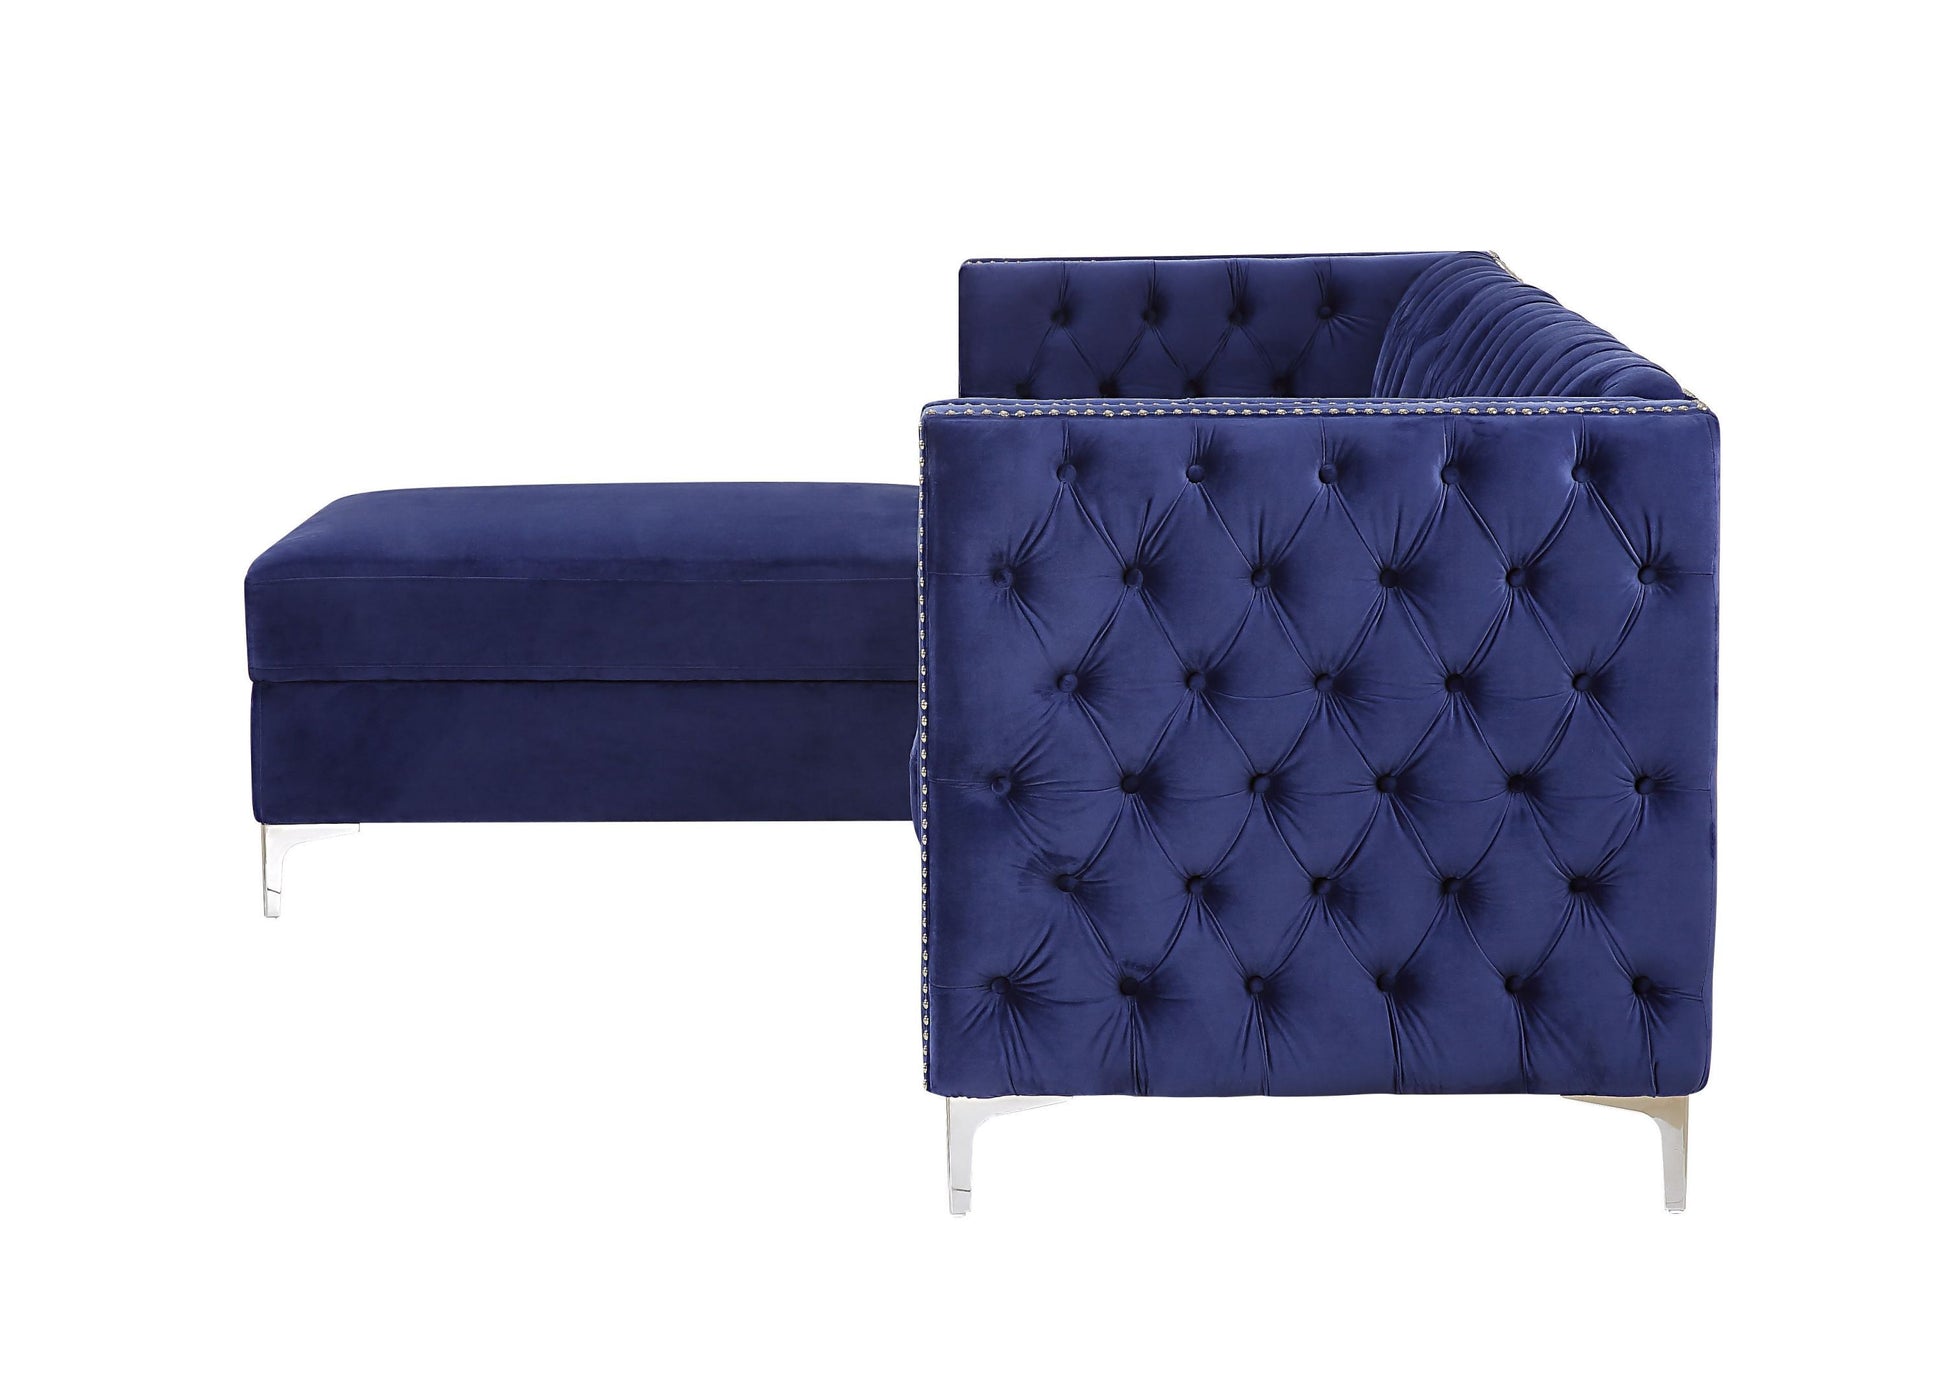 ACME Sullivan Sectional Sofa, Navy Blue Velvet 55490 - Enova Luxe Home Store